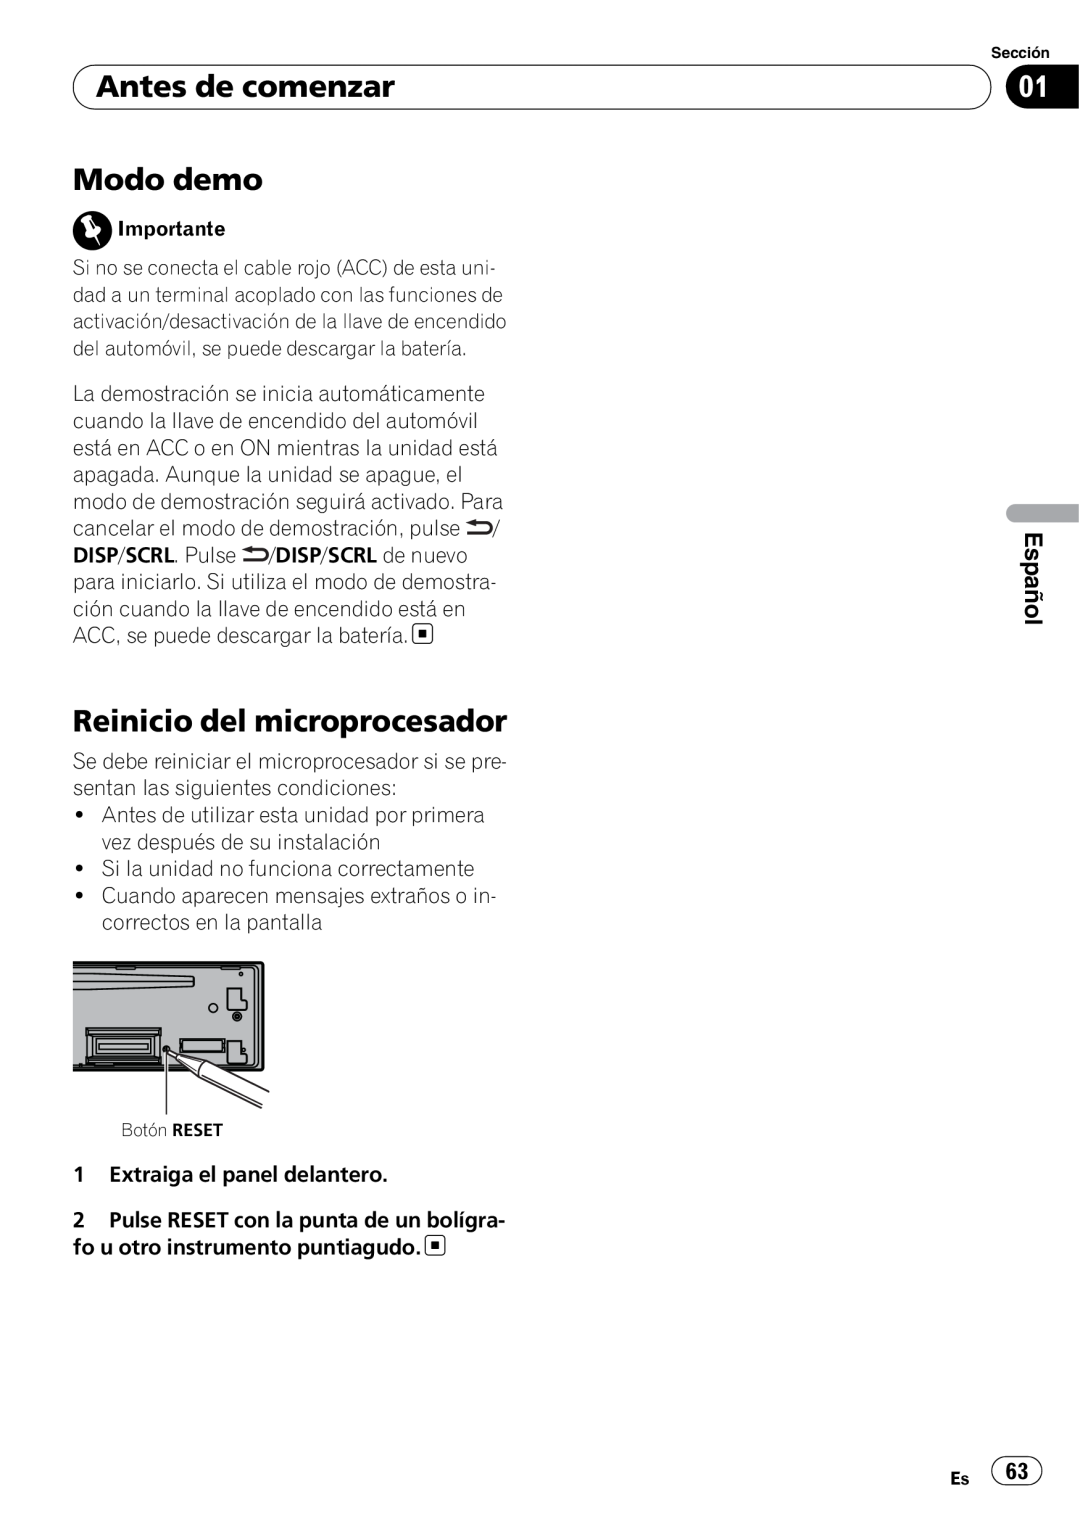 Pioneer DEH-P5200HD operation manual Antes de comenzar Modo demo, Reinicio del microprocesador, Español 